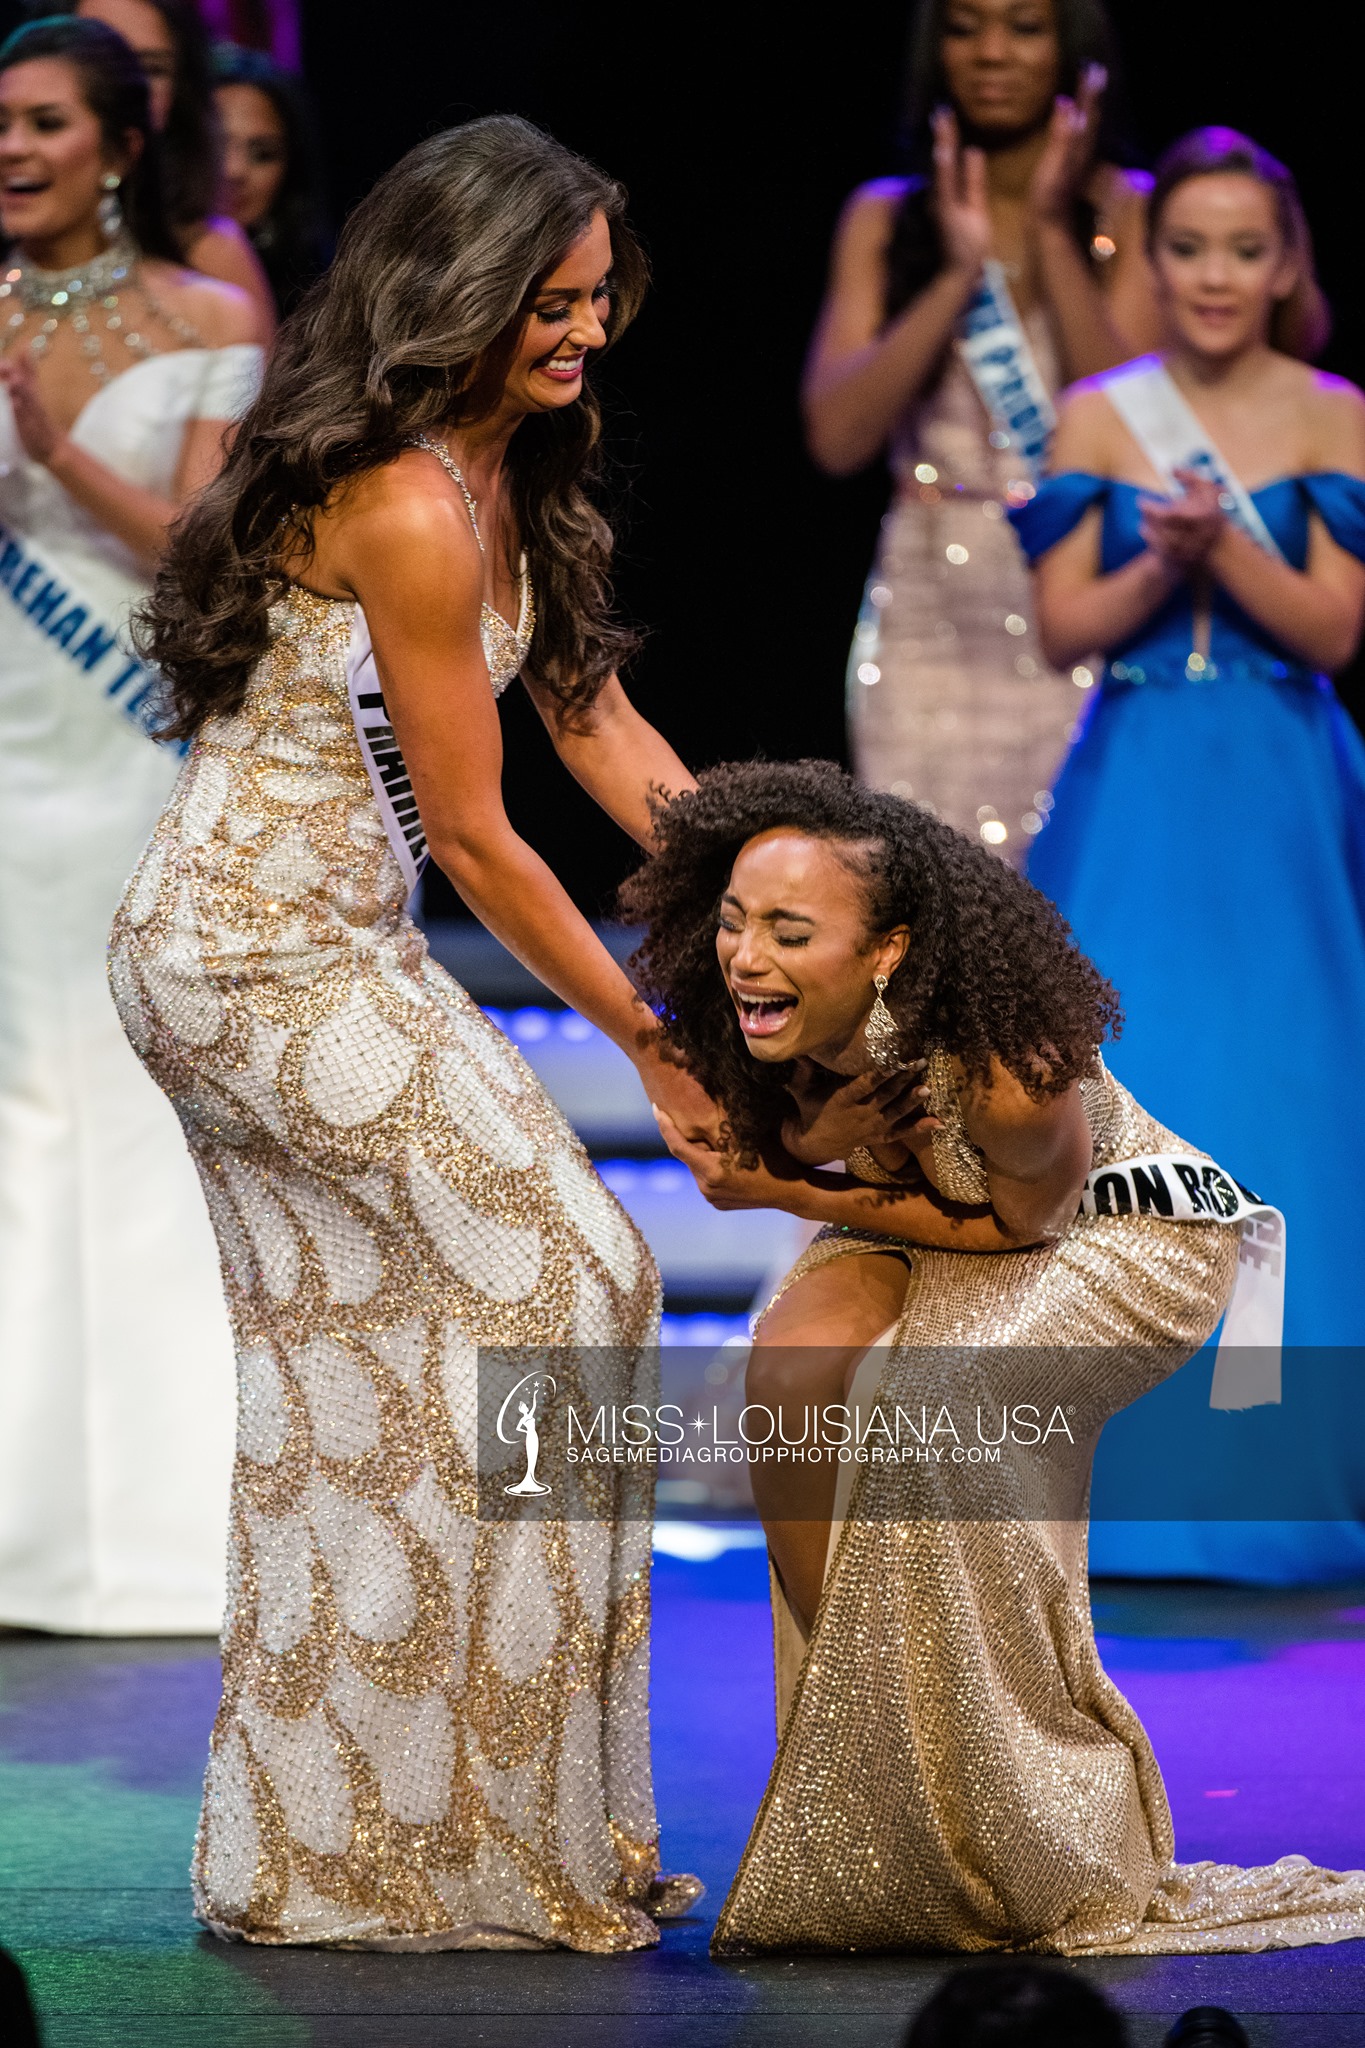 Miss Louisiana USA 2020 pageant photos 17